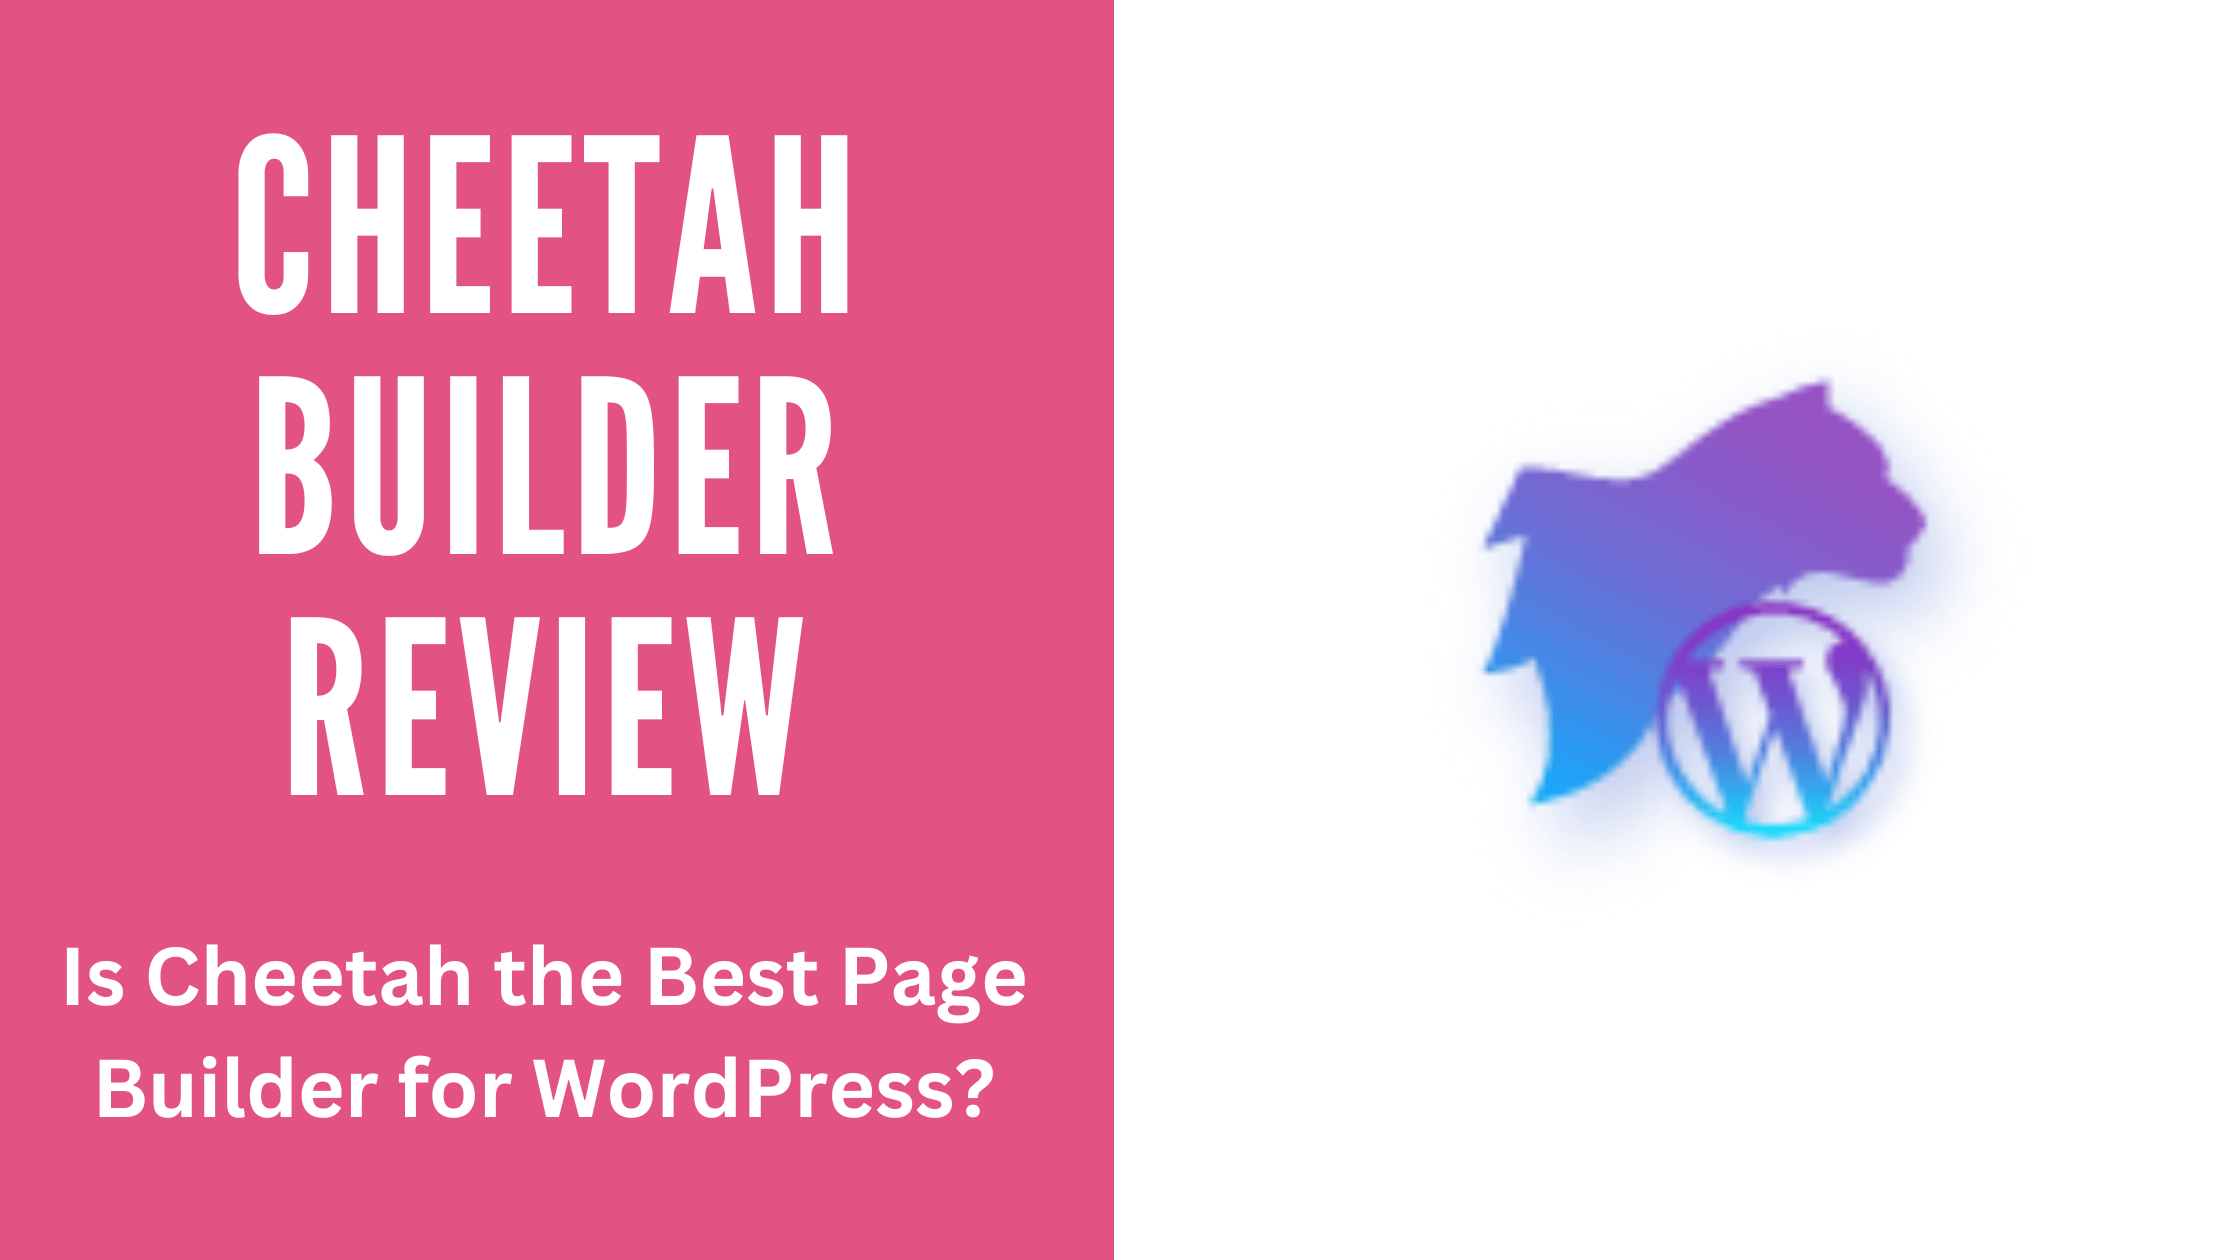 Cheetah Builder Review